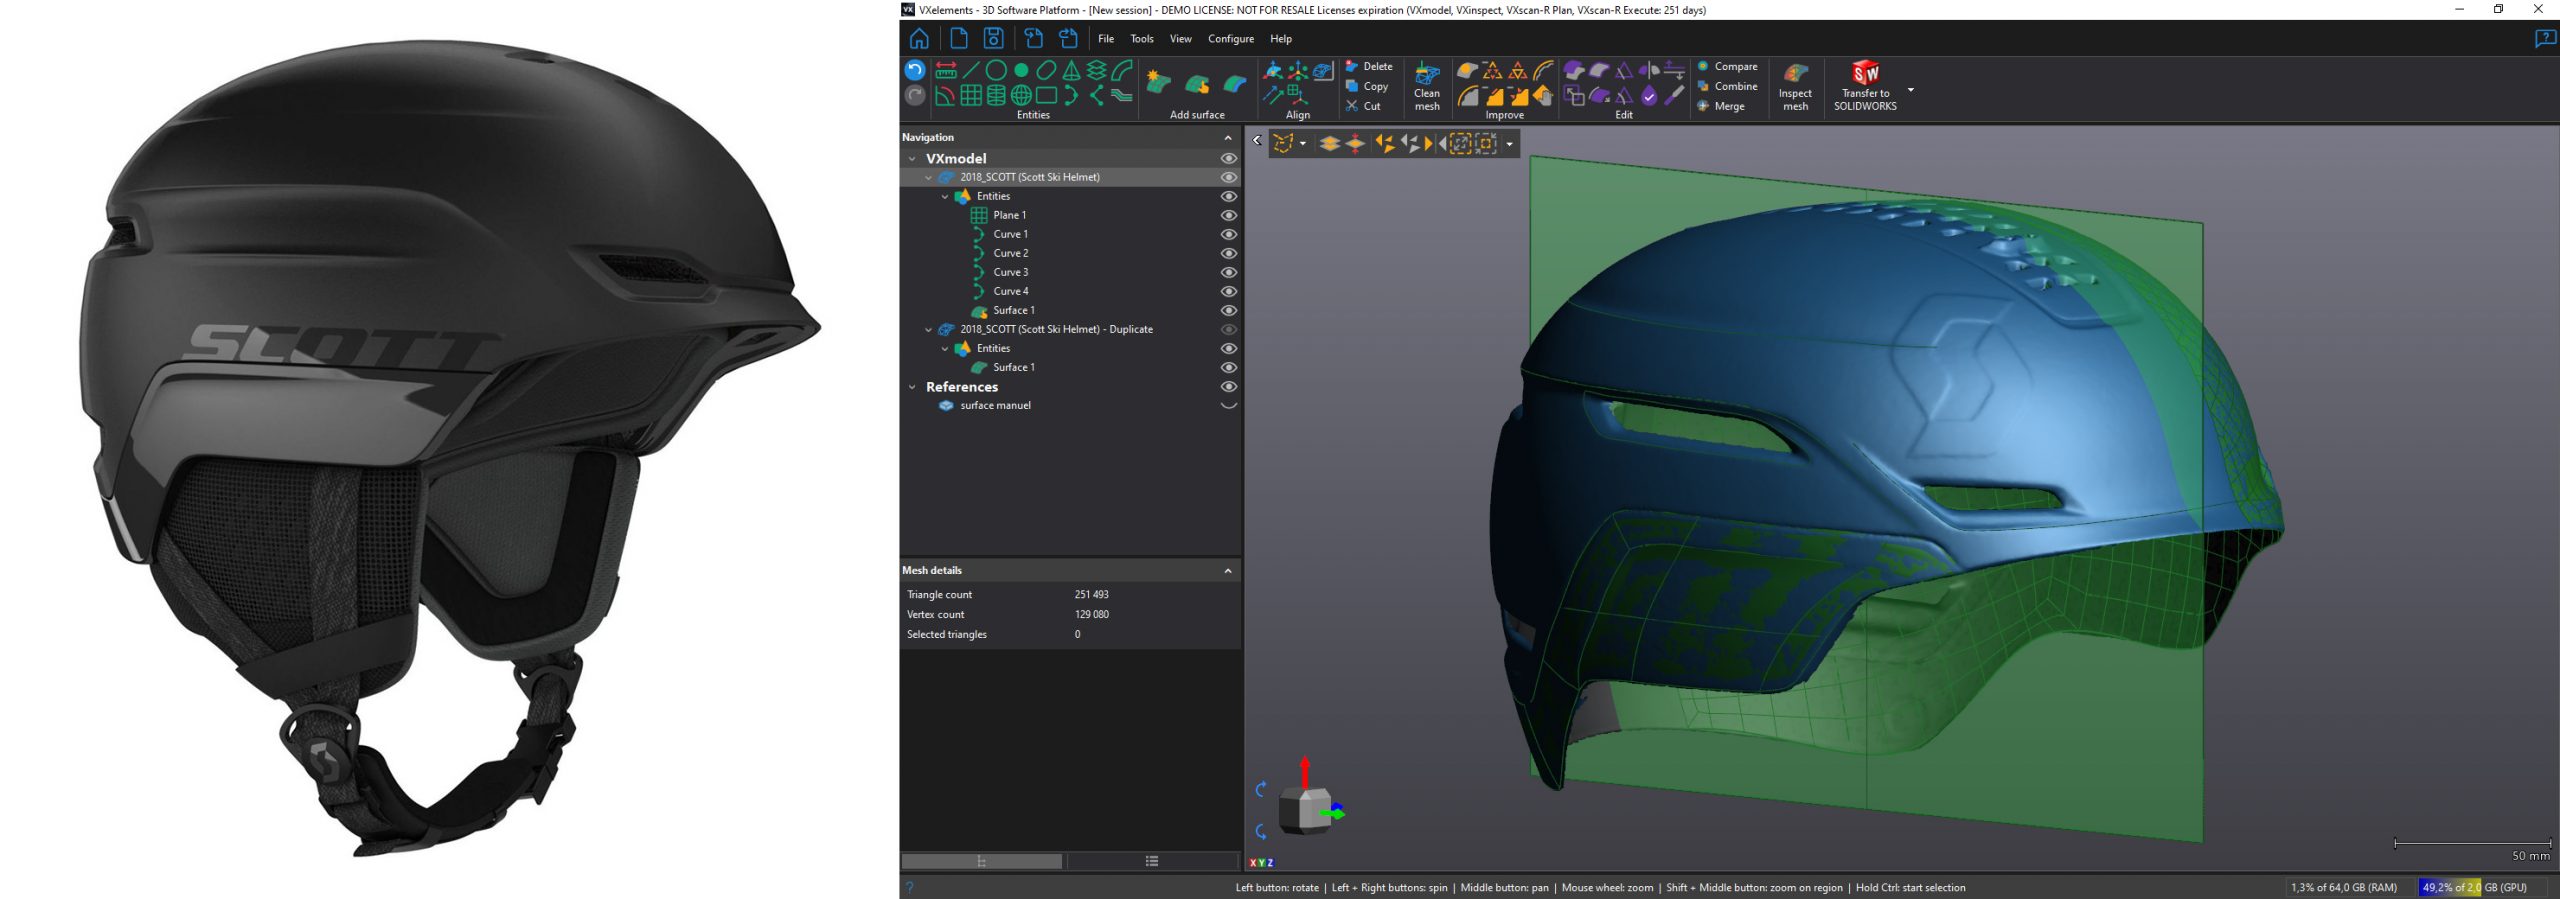 Comparaison d'un casque de ski réel et d'un casque modélisé en 3D dans le logiciel VXelements